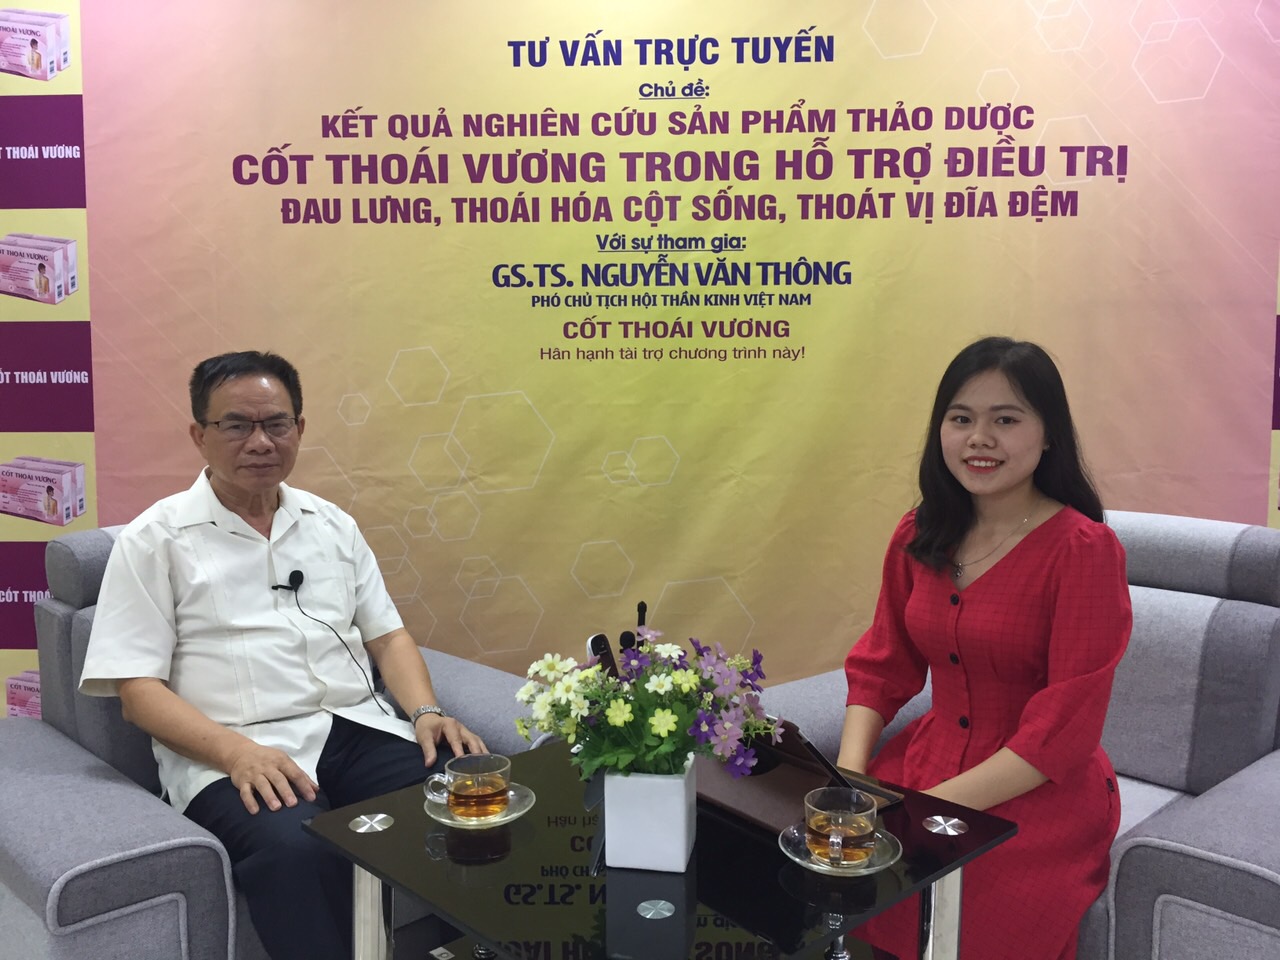 Cơ hội giao lưu trực tiếp cùng chuyên gia Nguyễn Văn Thông